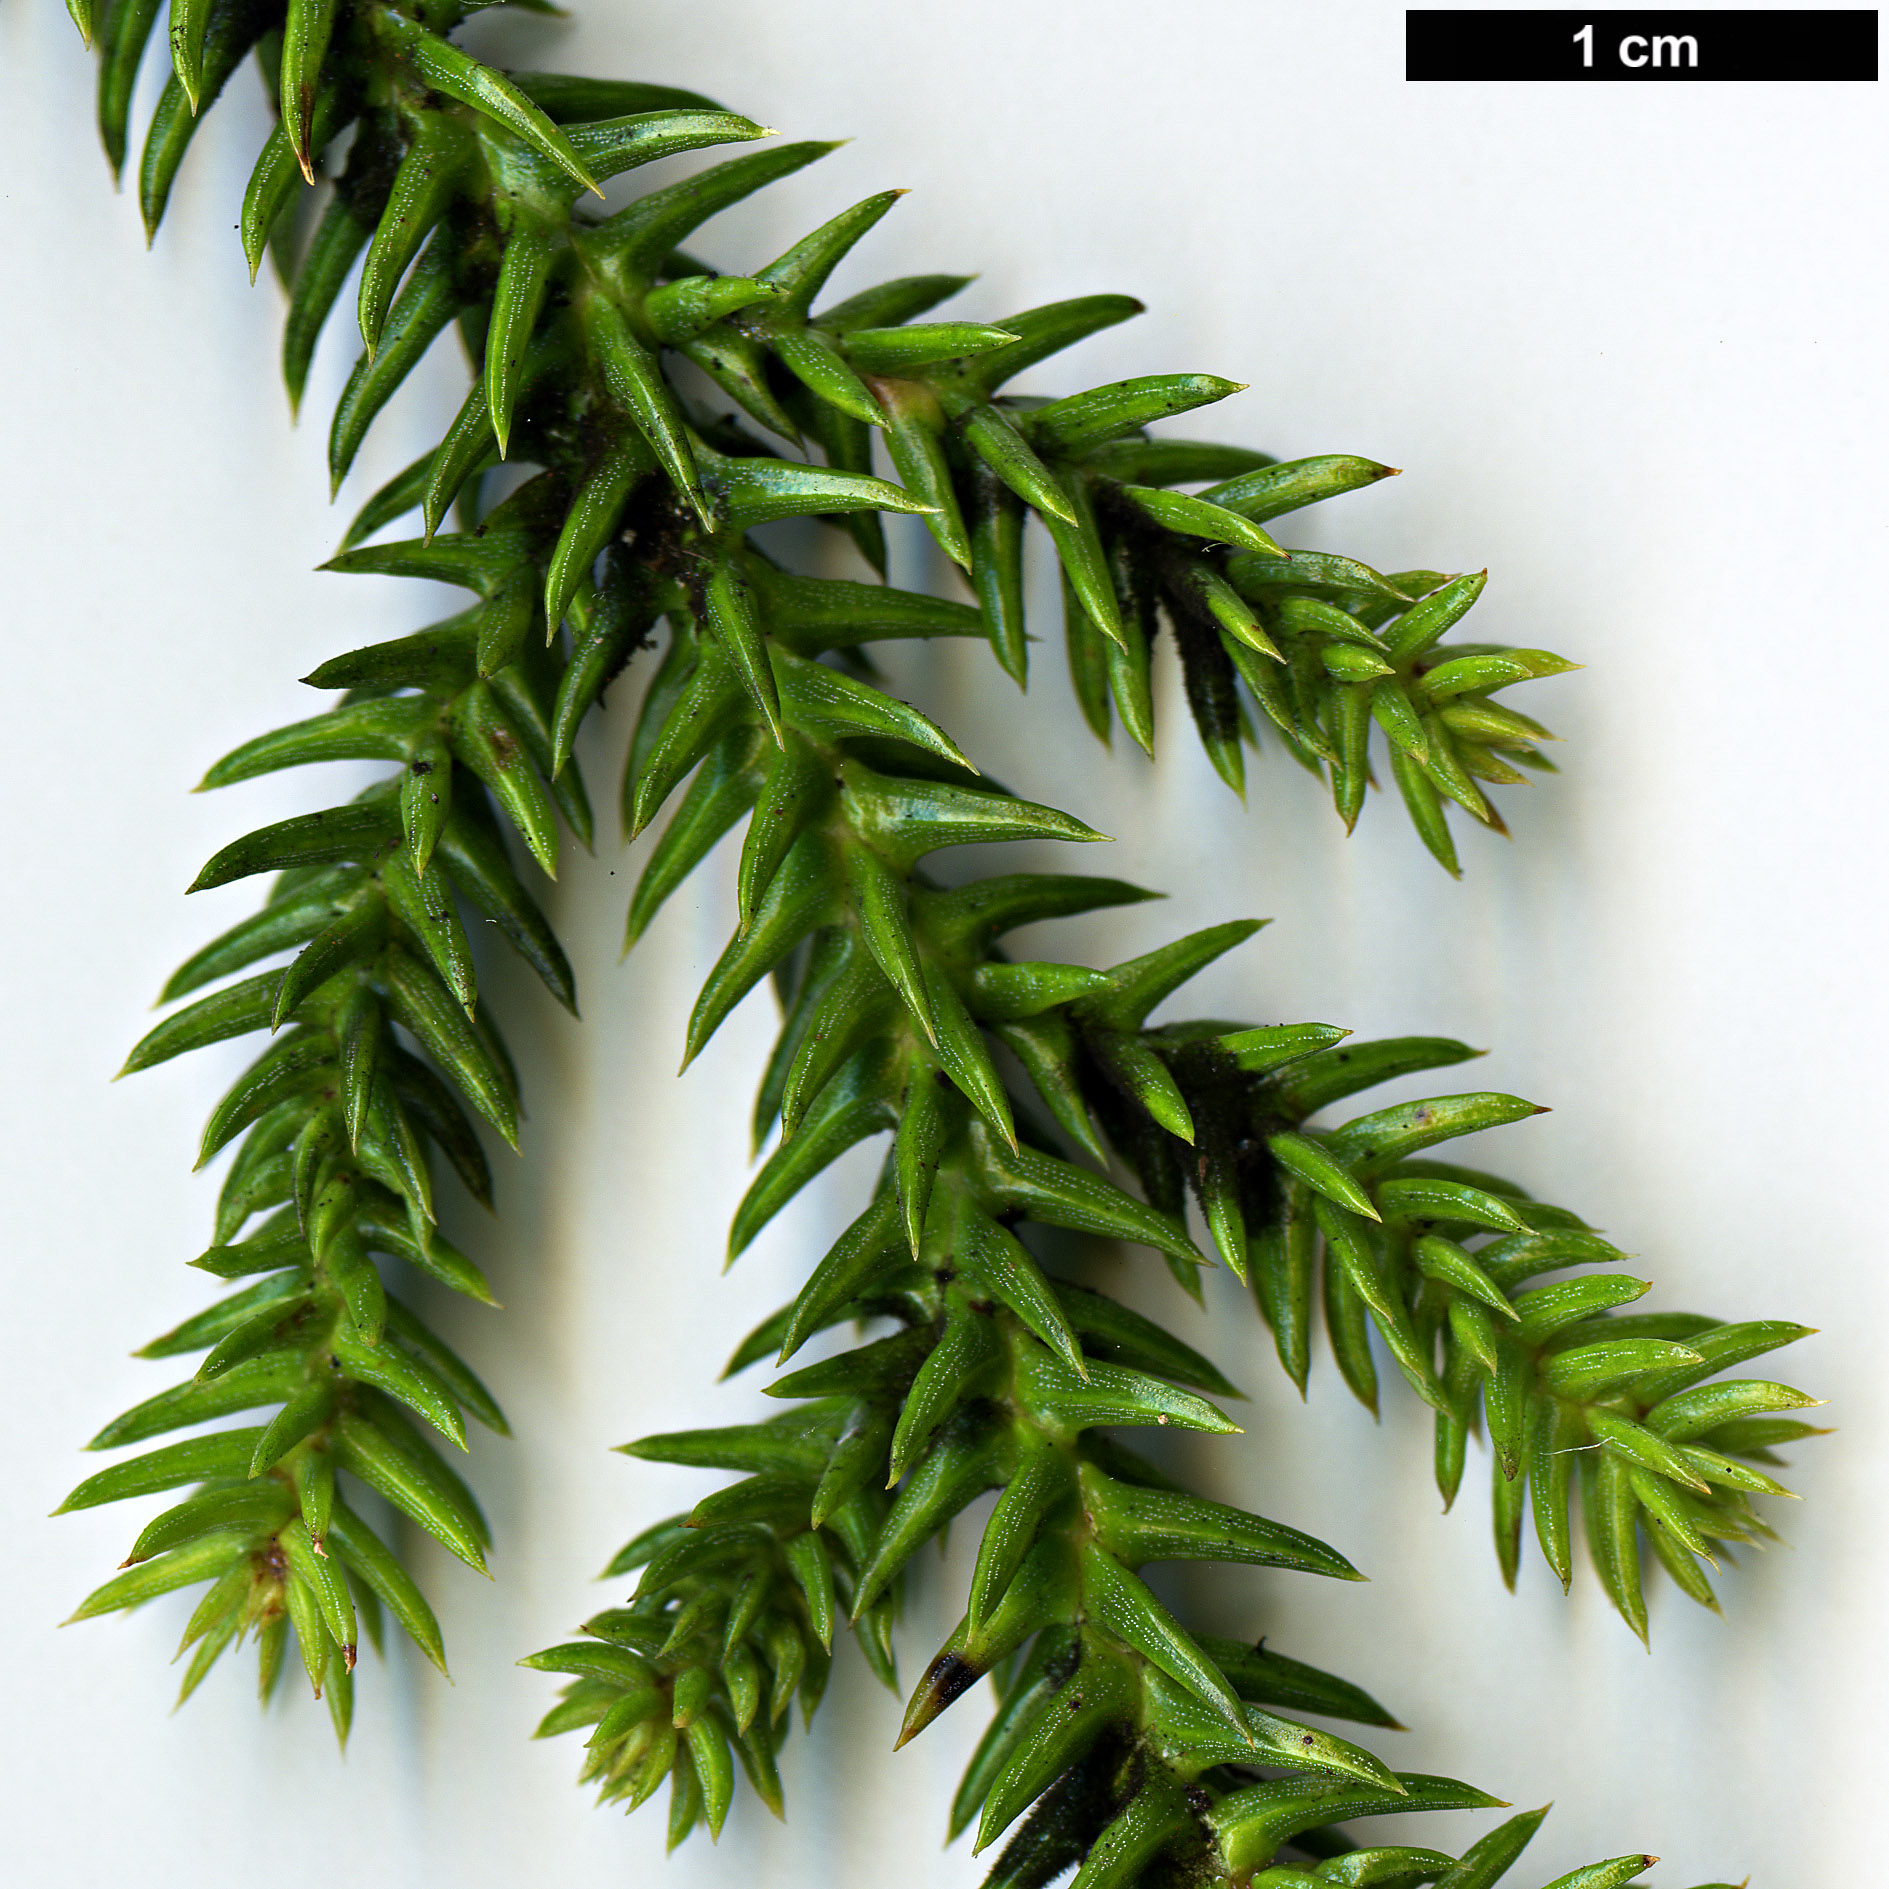 High resolution image: Family: Araucariaceae - Genus: Araucaria - Taxon: cunninghamii